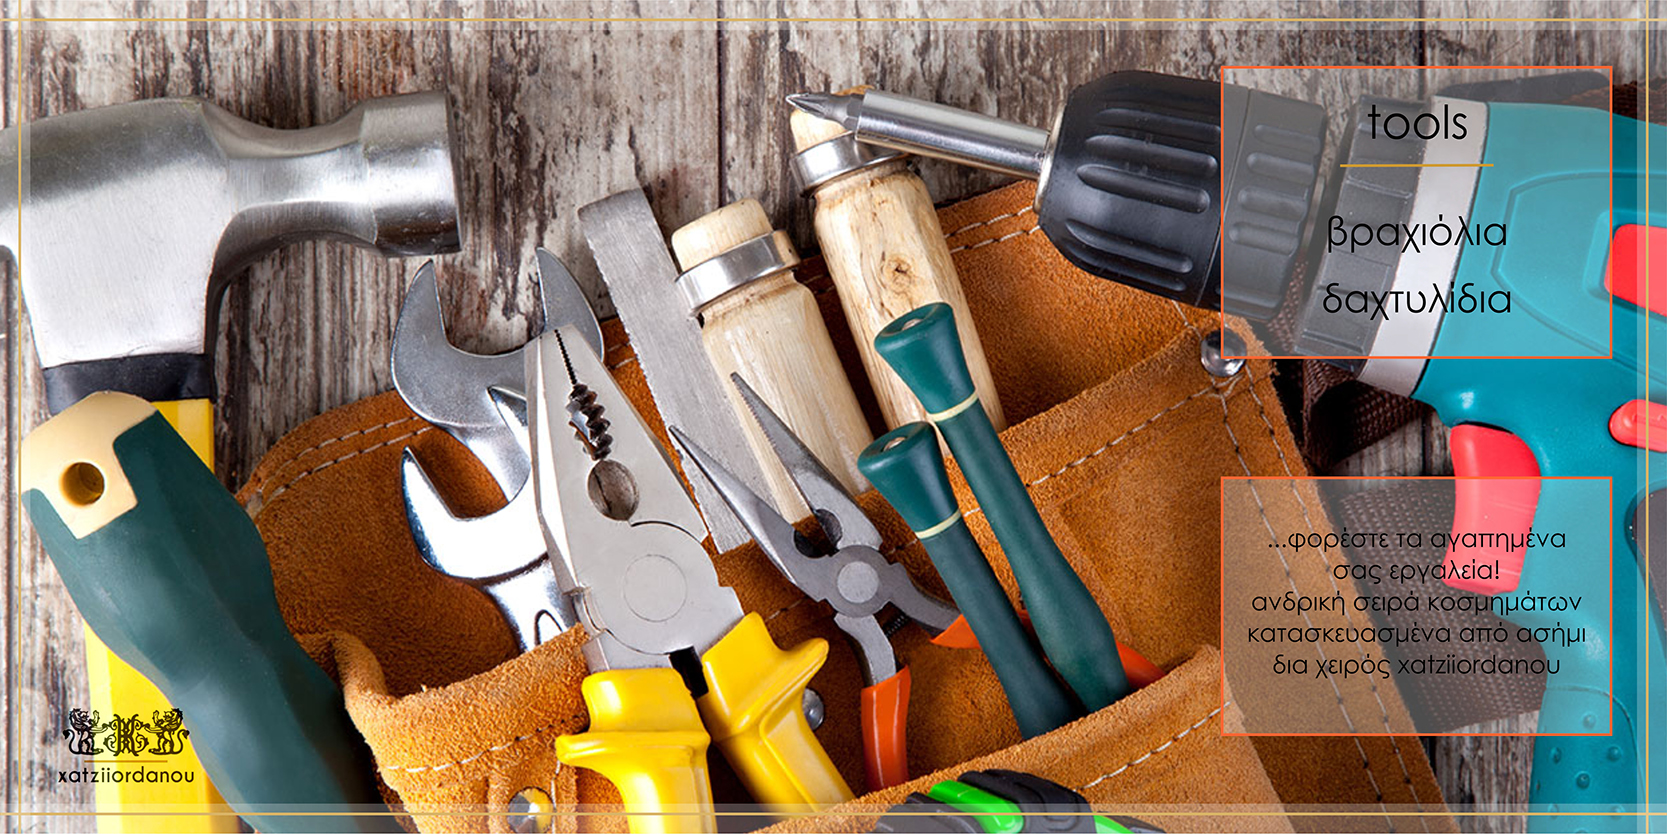 Industrial tools. Строительные инструменты. Инструменты для стройки. Ручной строительный инструмент. Инструменты для ремонта квартиры.